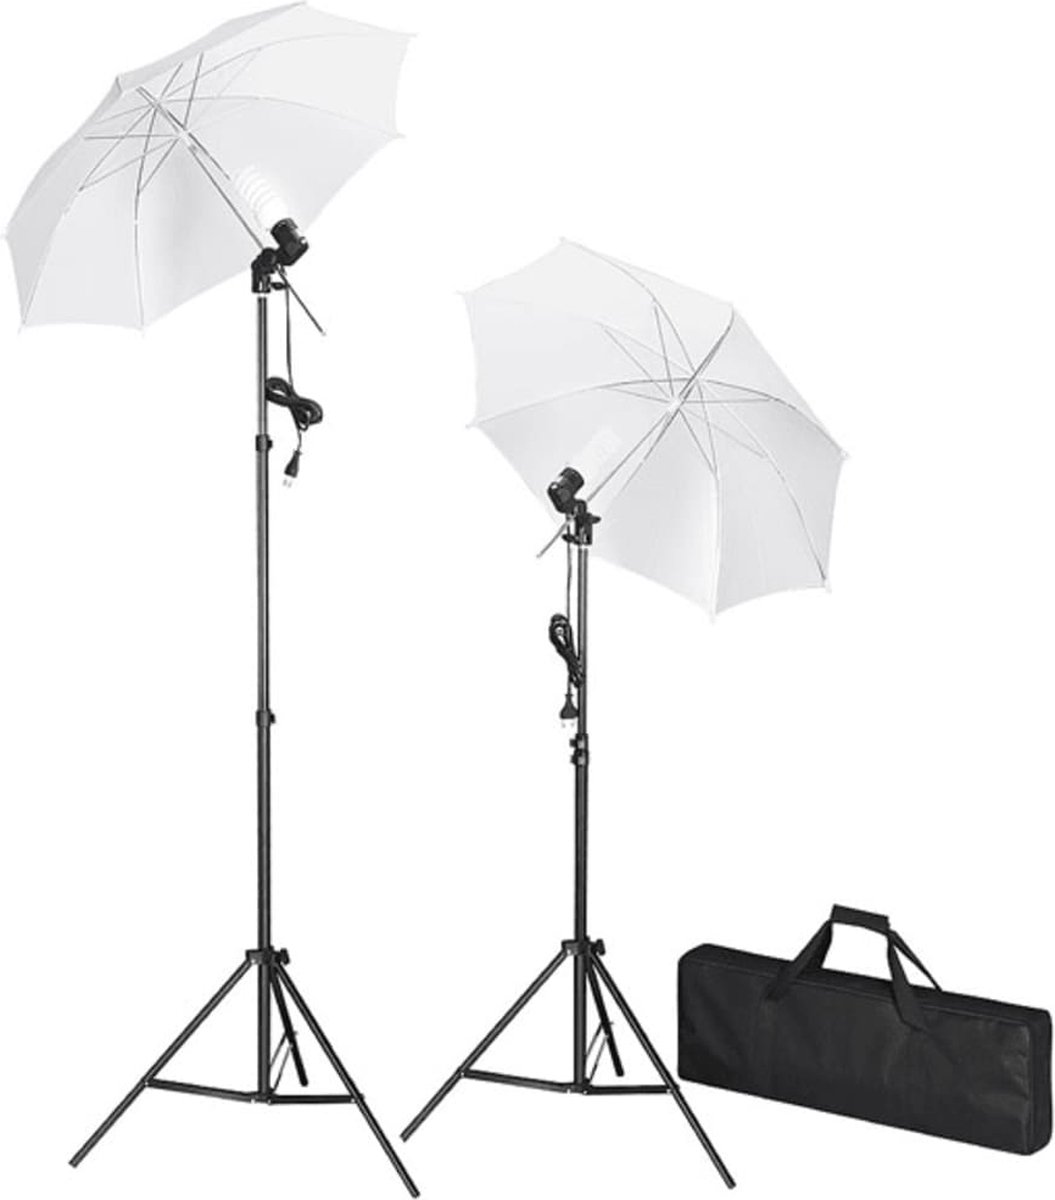 VidaLife Studiolampenset inclusief statieven en paraplu's